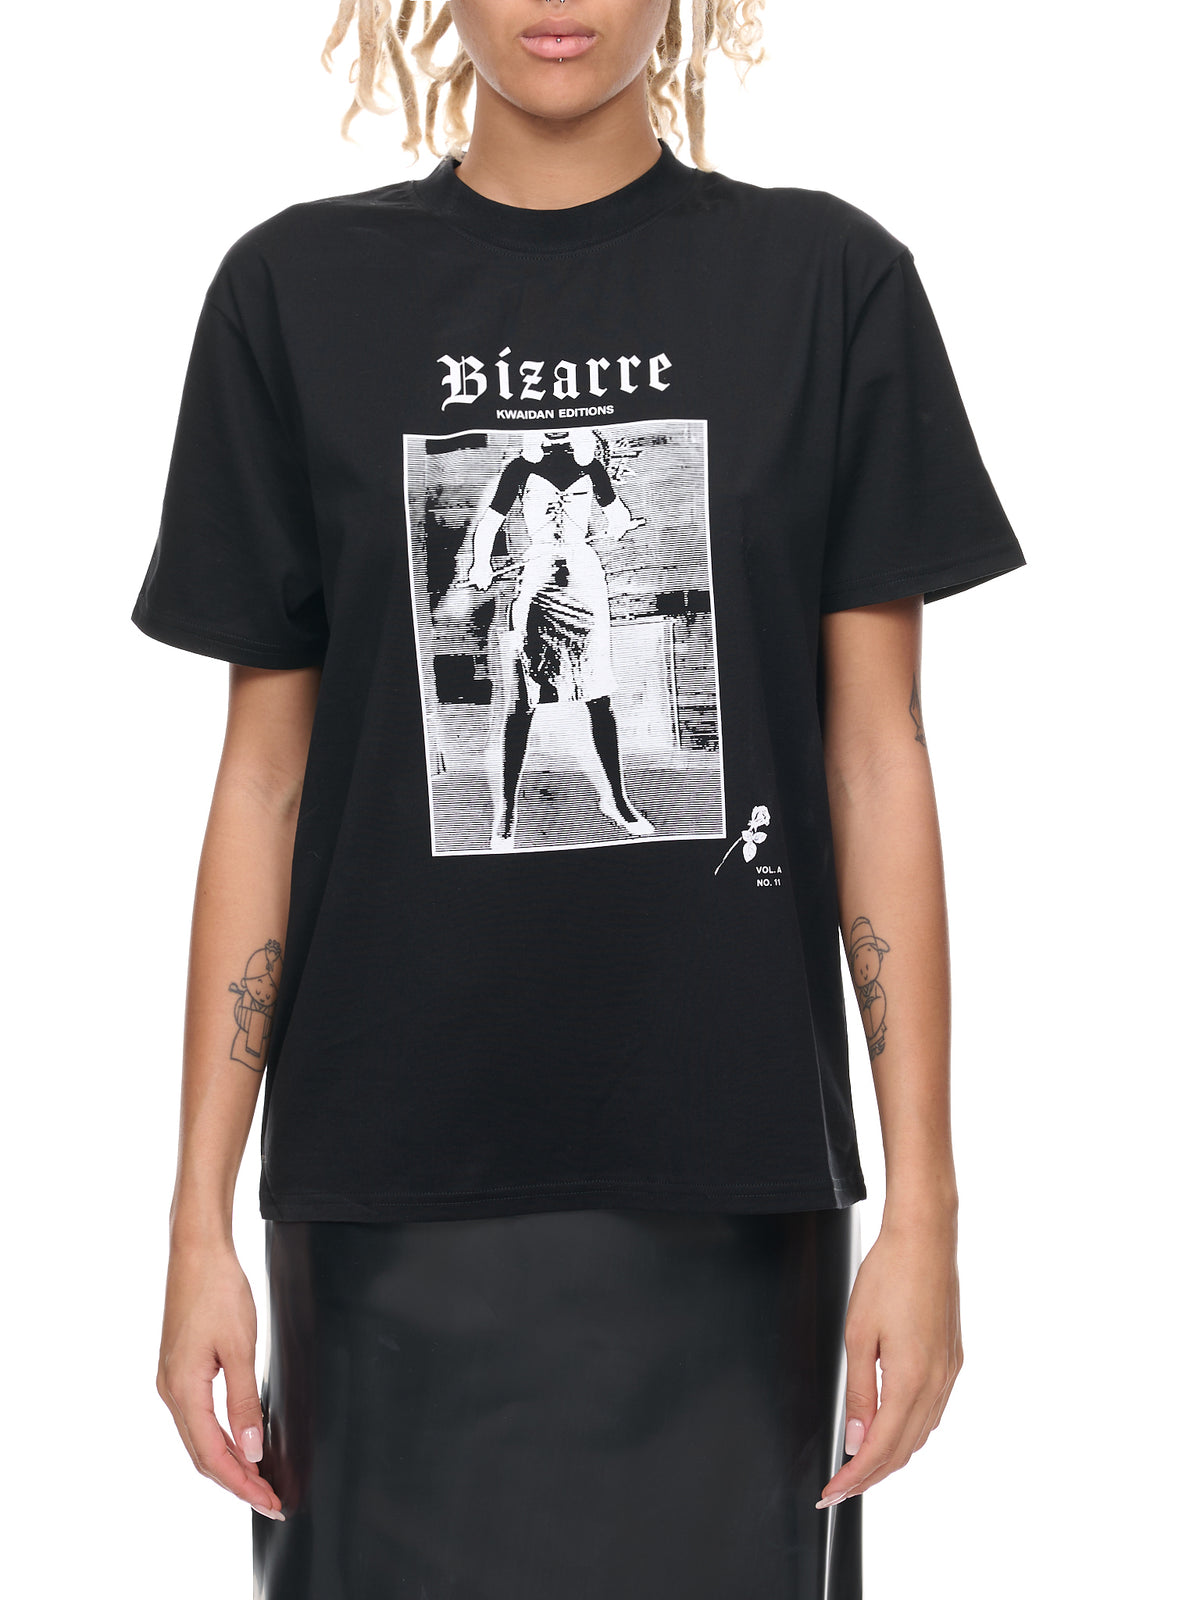 Bizarre Print T-Shirt (WT131W-CJB-BLACK-BIZARRE-PRINT)